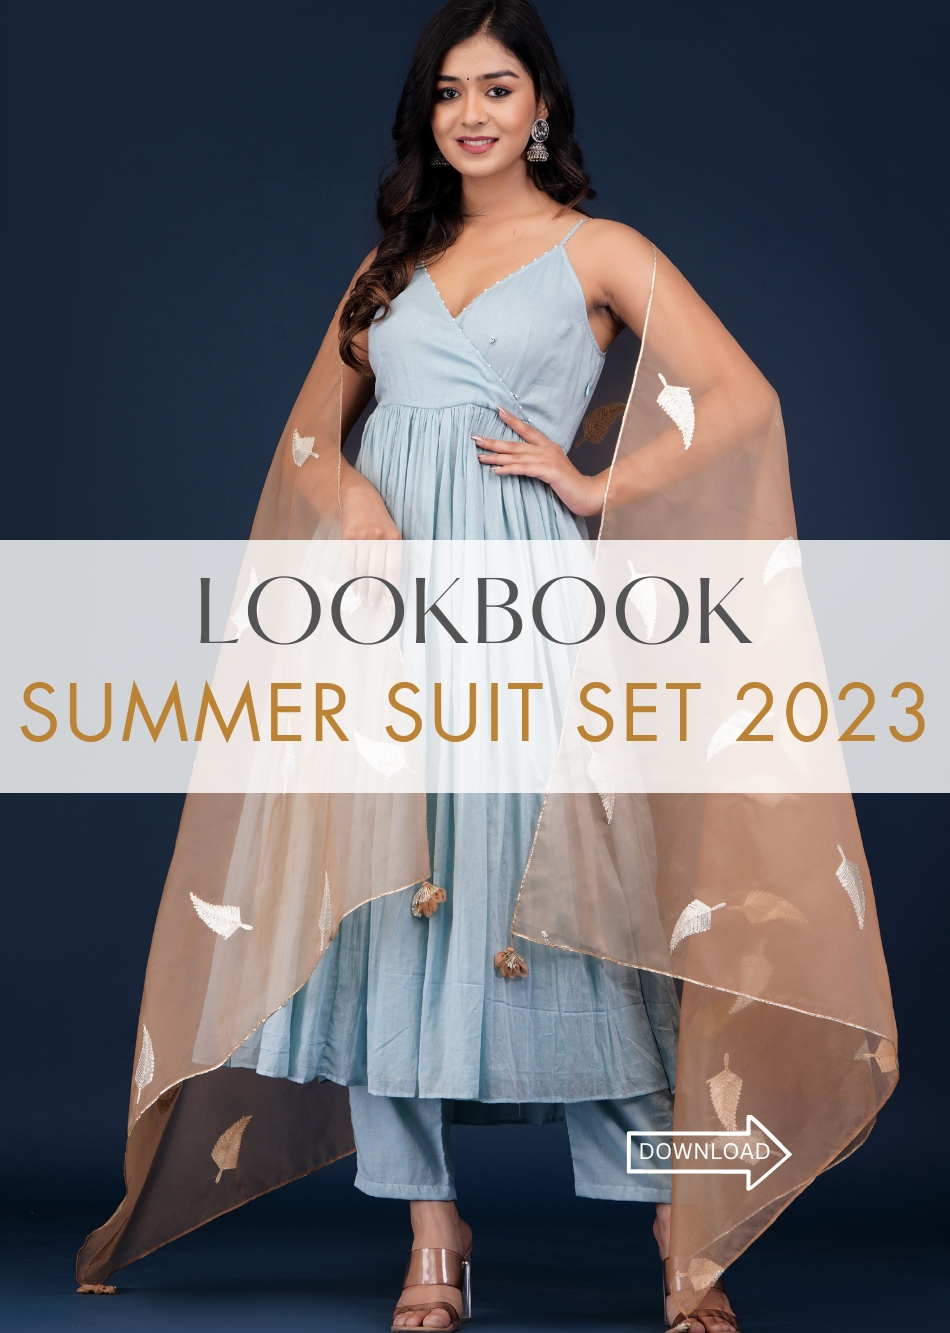 Summer Suit Sets 2023